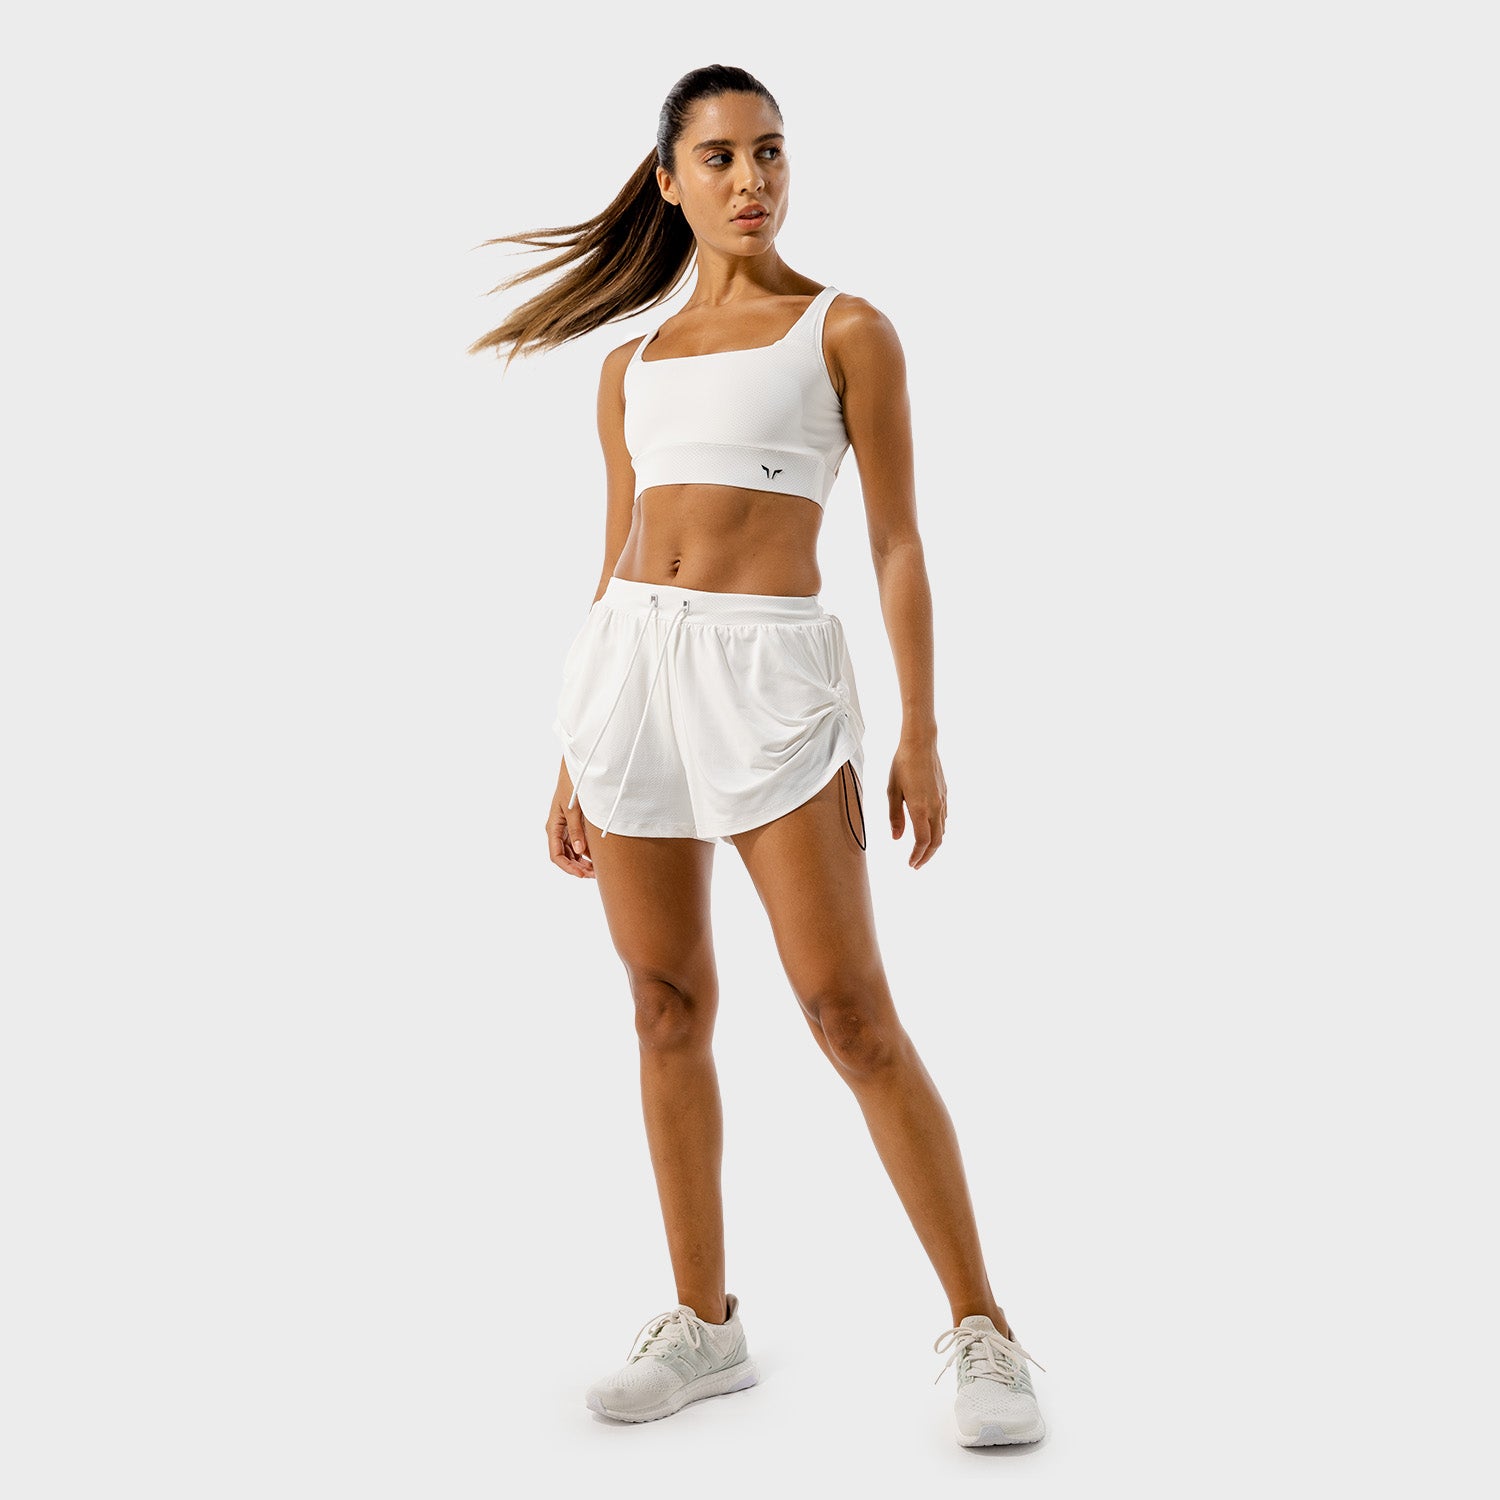 squatwolf-workout-clothes-flux-bra-khaki-white-sports-bra-for-gym